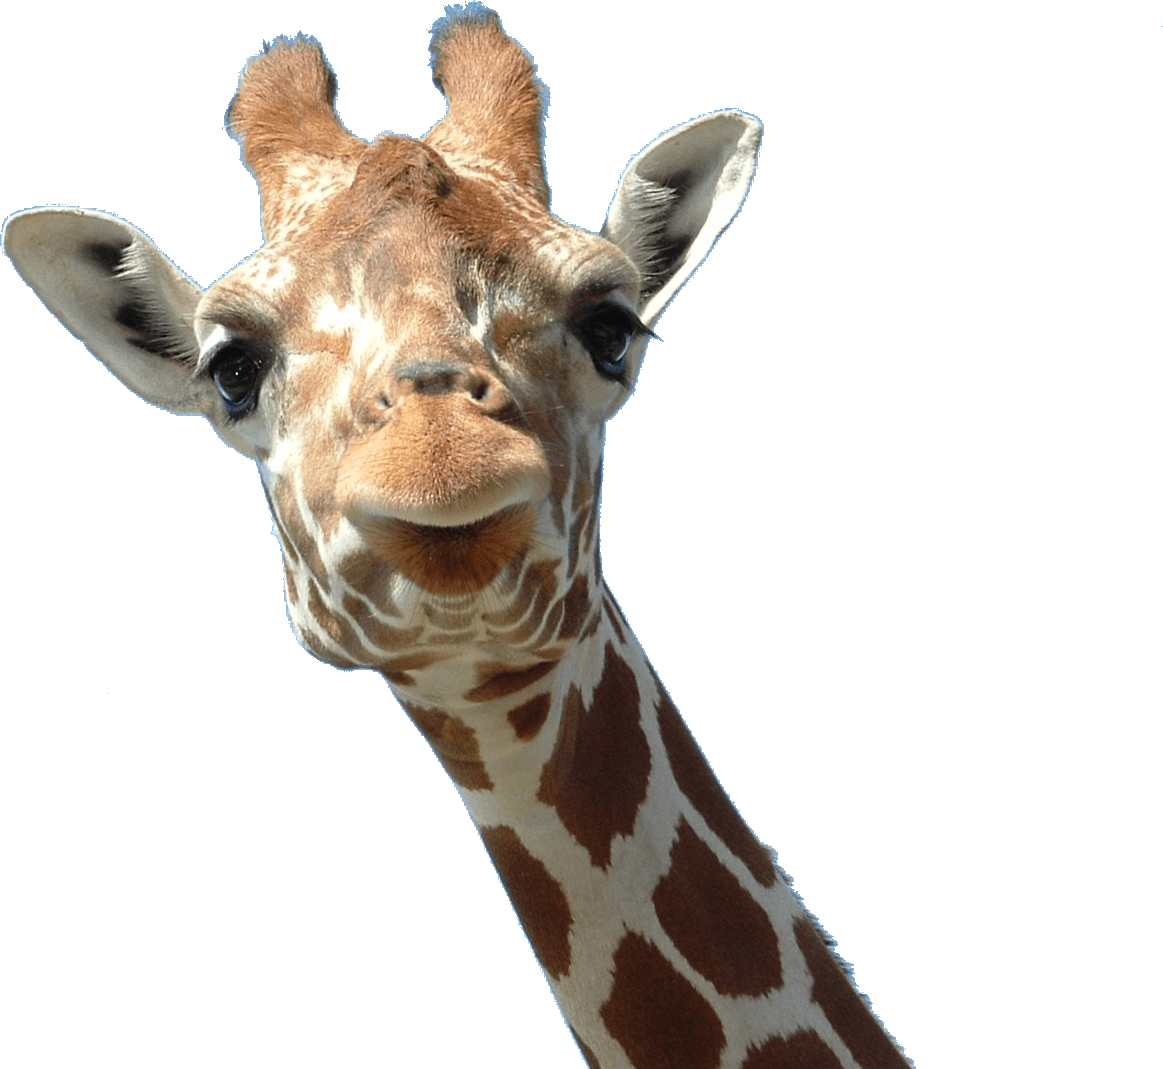 Giraffe Face - Giraffes Transparent, Hd Png Download